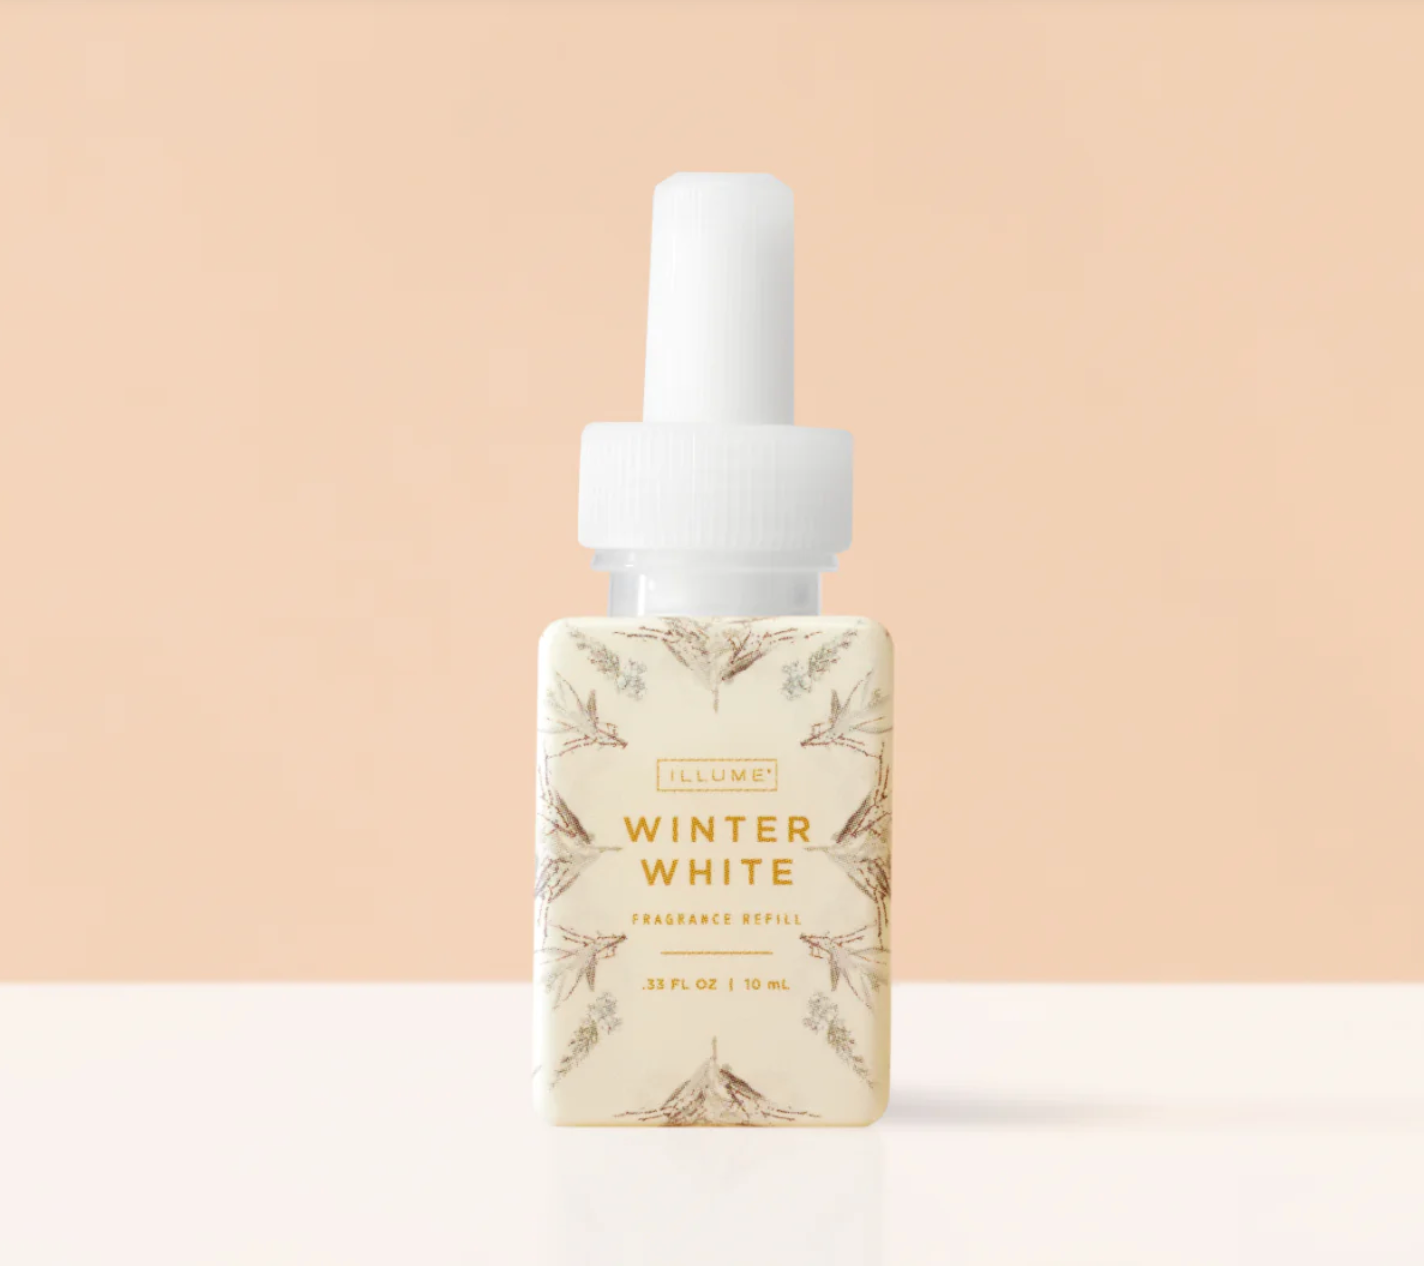 Pura Fragrance Refill - Winter White (Illume)